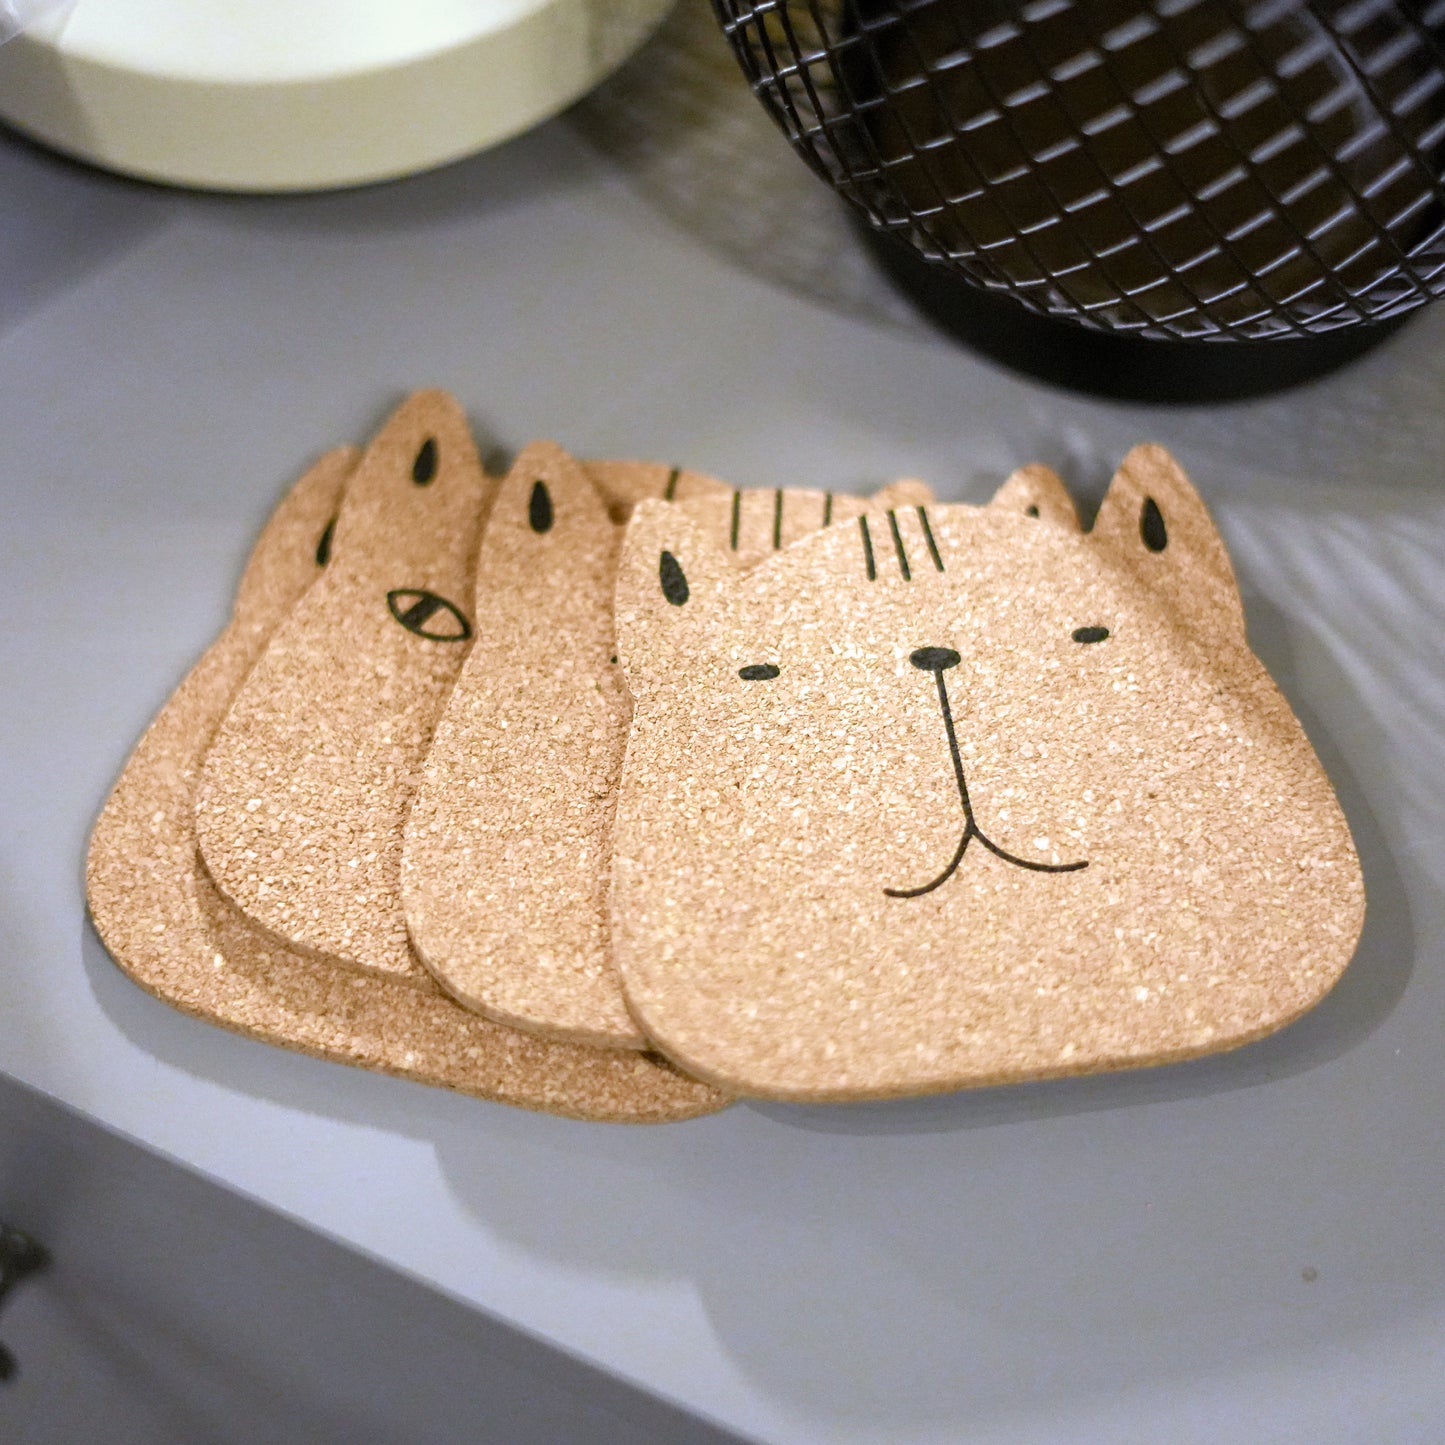 Meaow Cute cats - Podstawki korkowe, okrągłe, zestaw 6 szt.